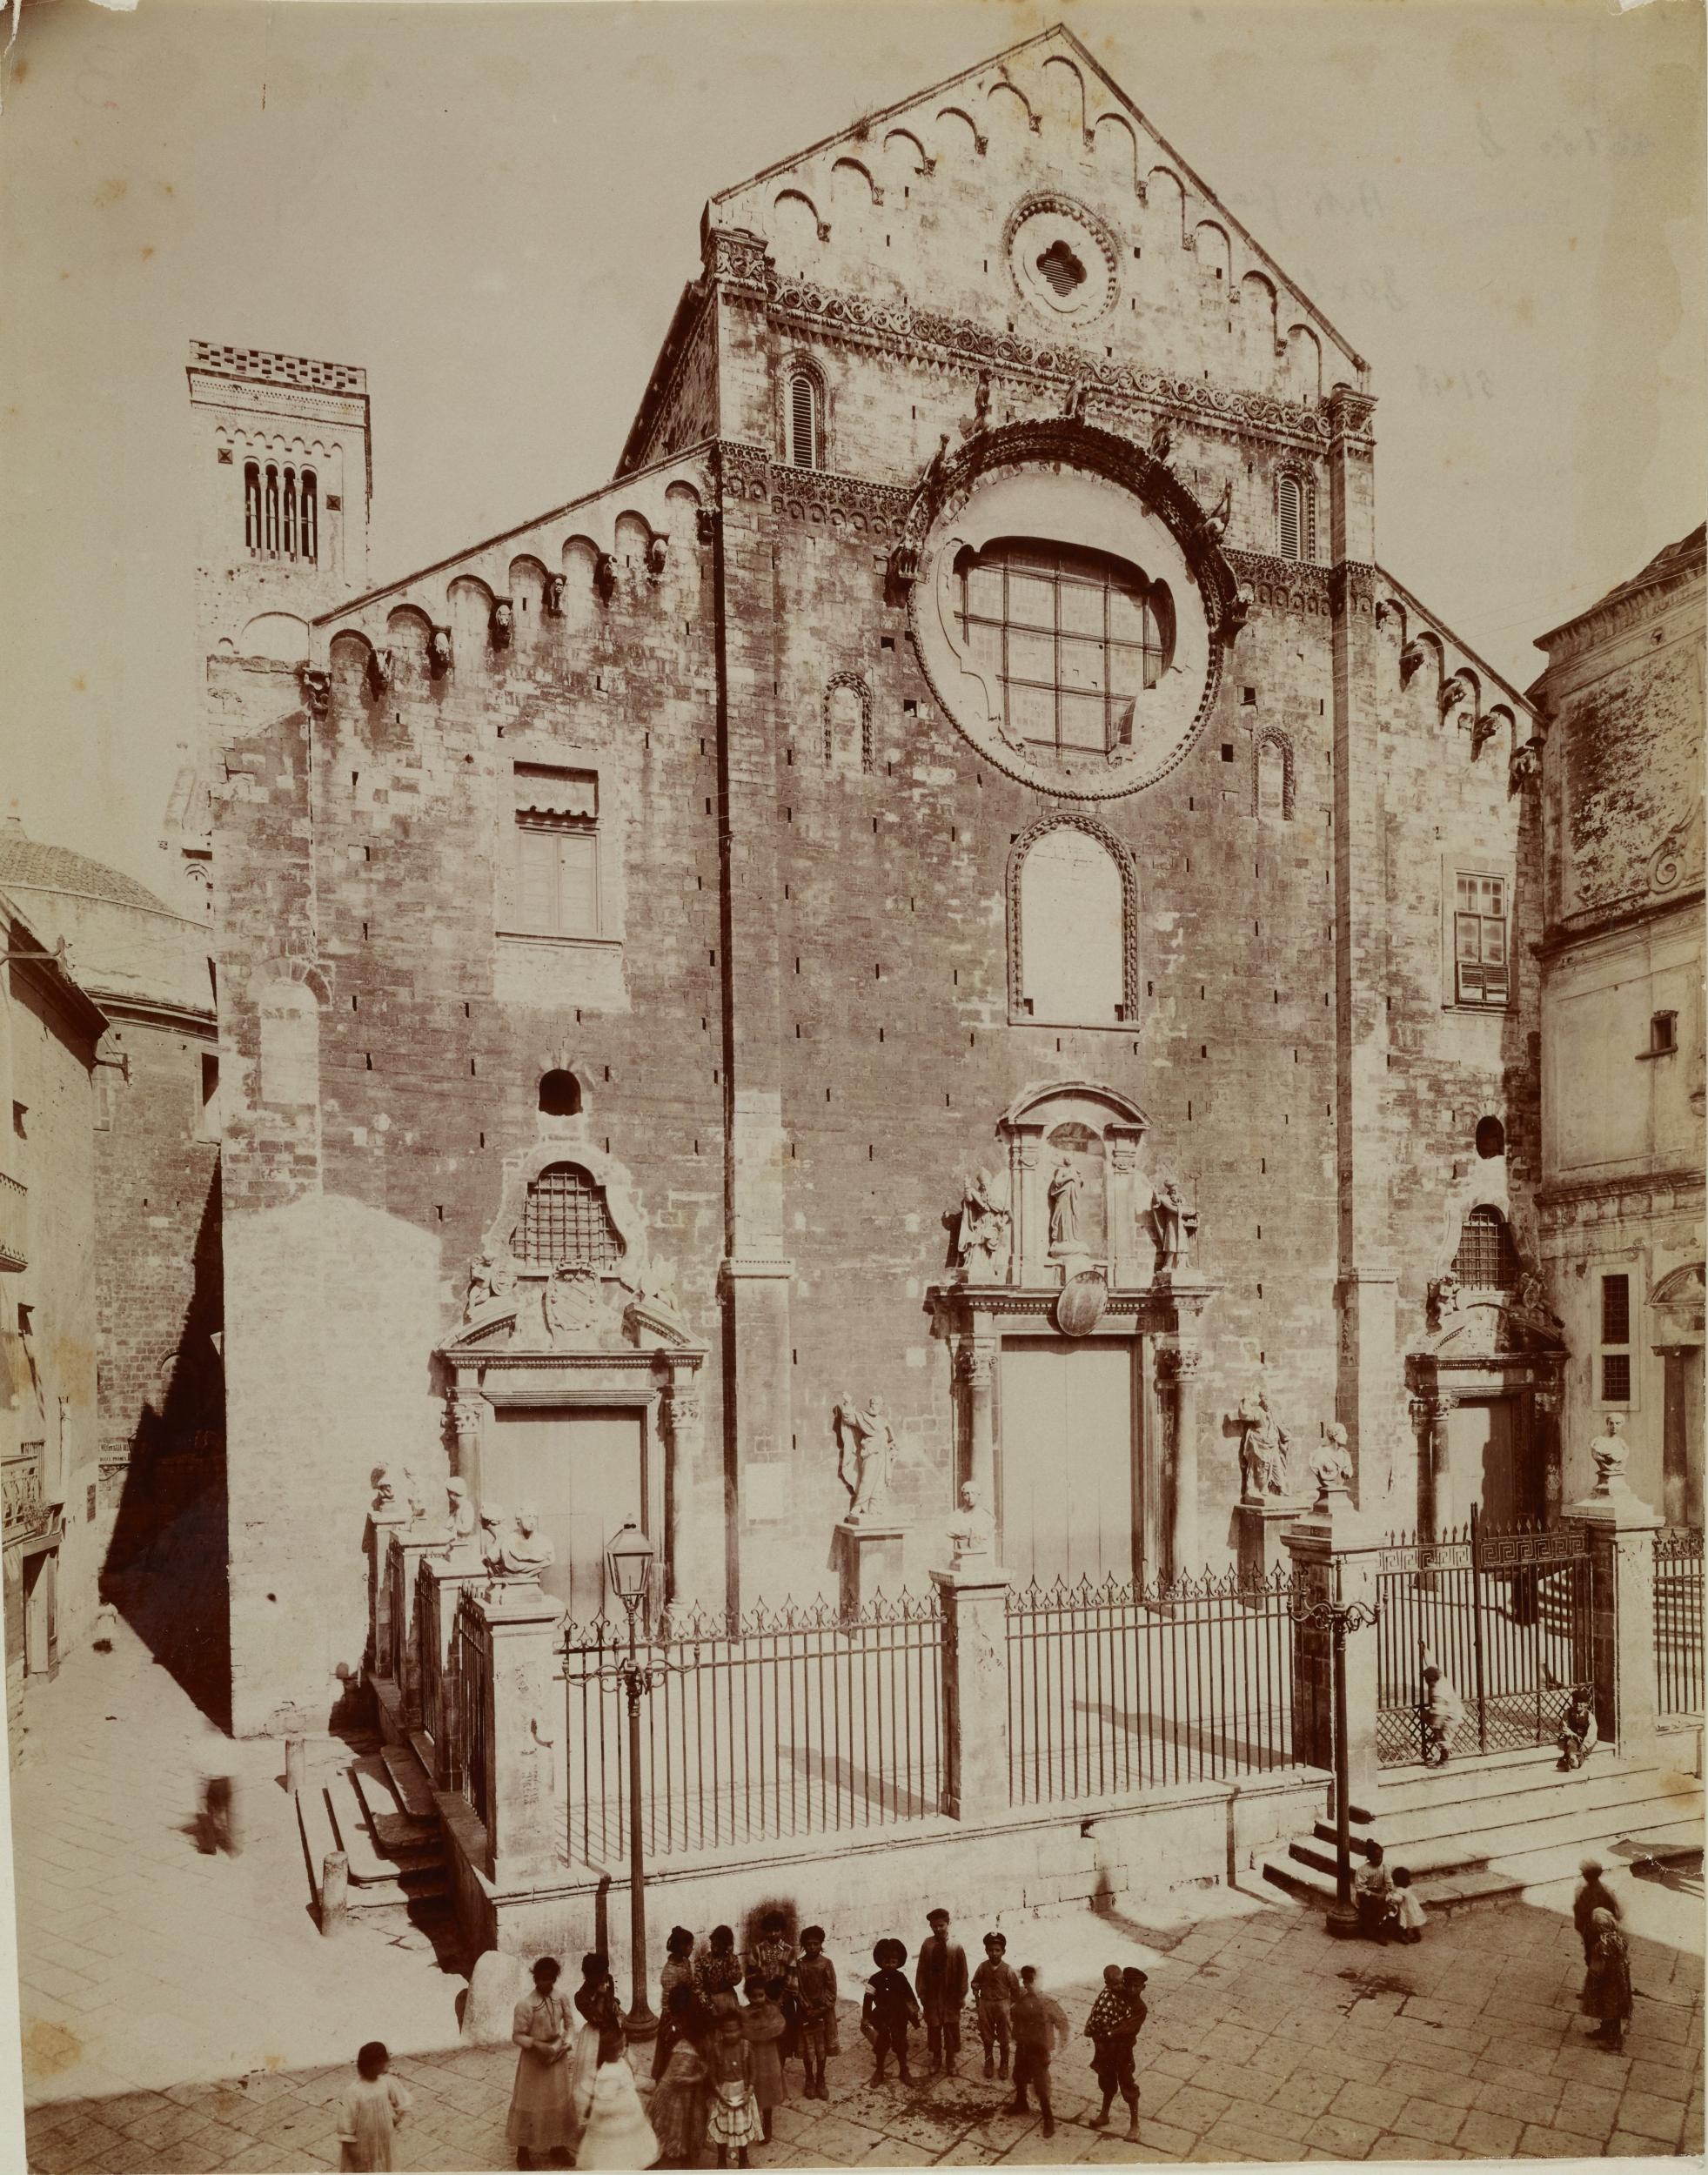 Fotografo non identificato, Bari - Cattedrale di S. Sabino, veduta d'insieme della facciata, 1931 ante, albumina/carta, MPI136590